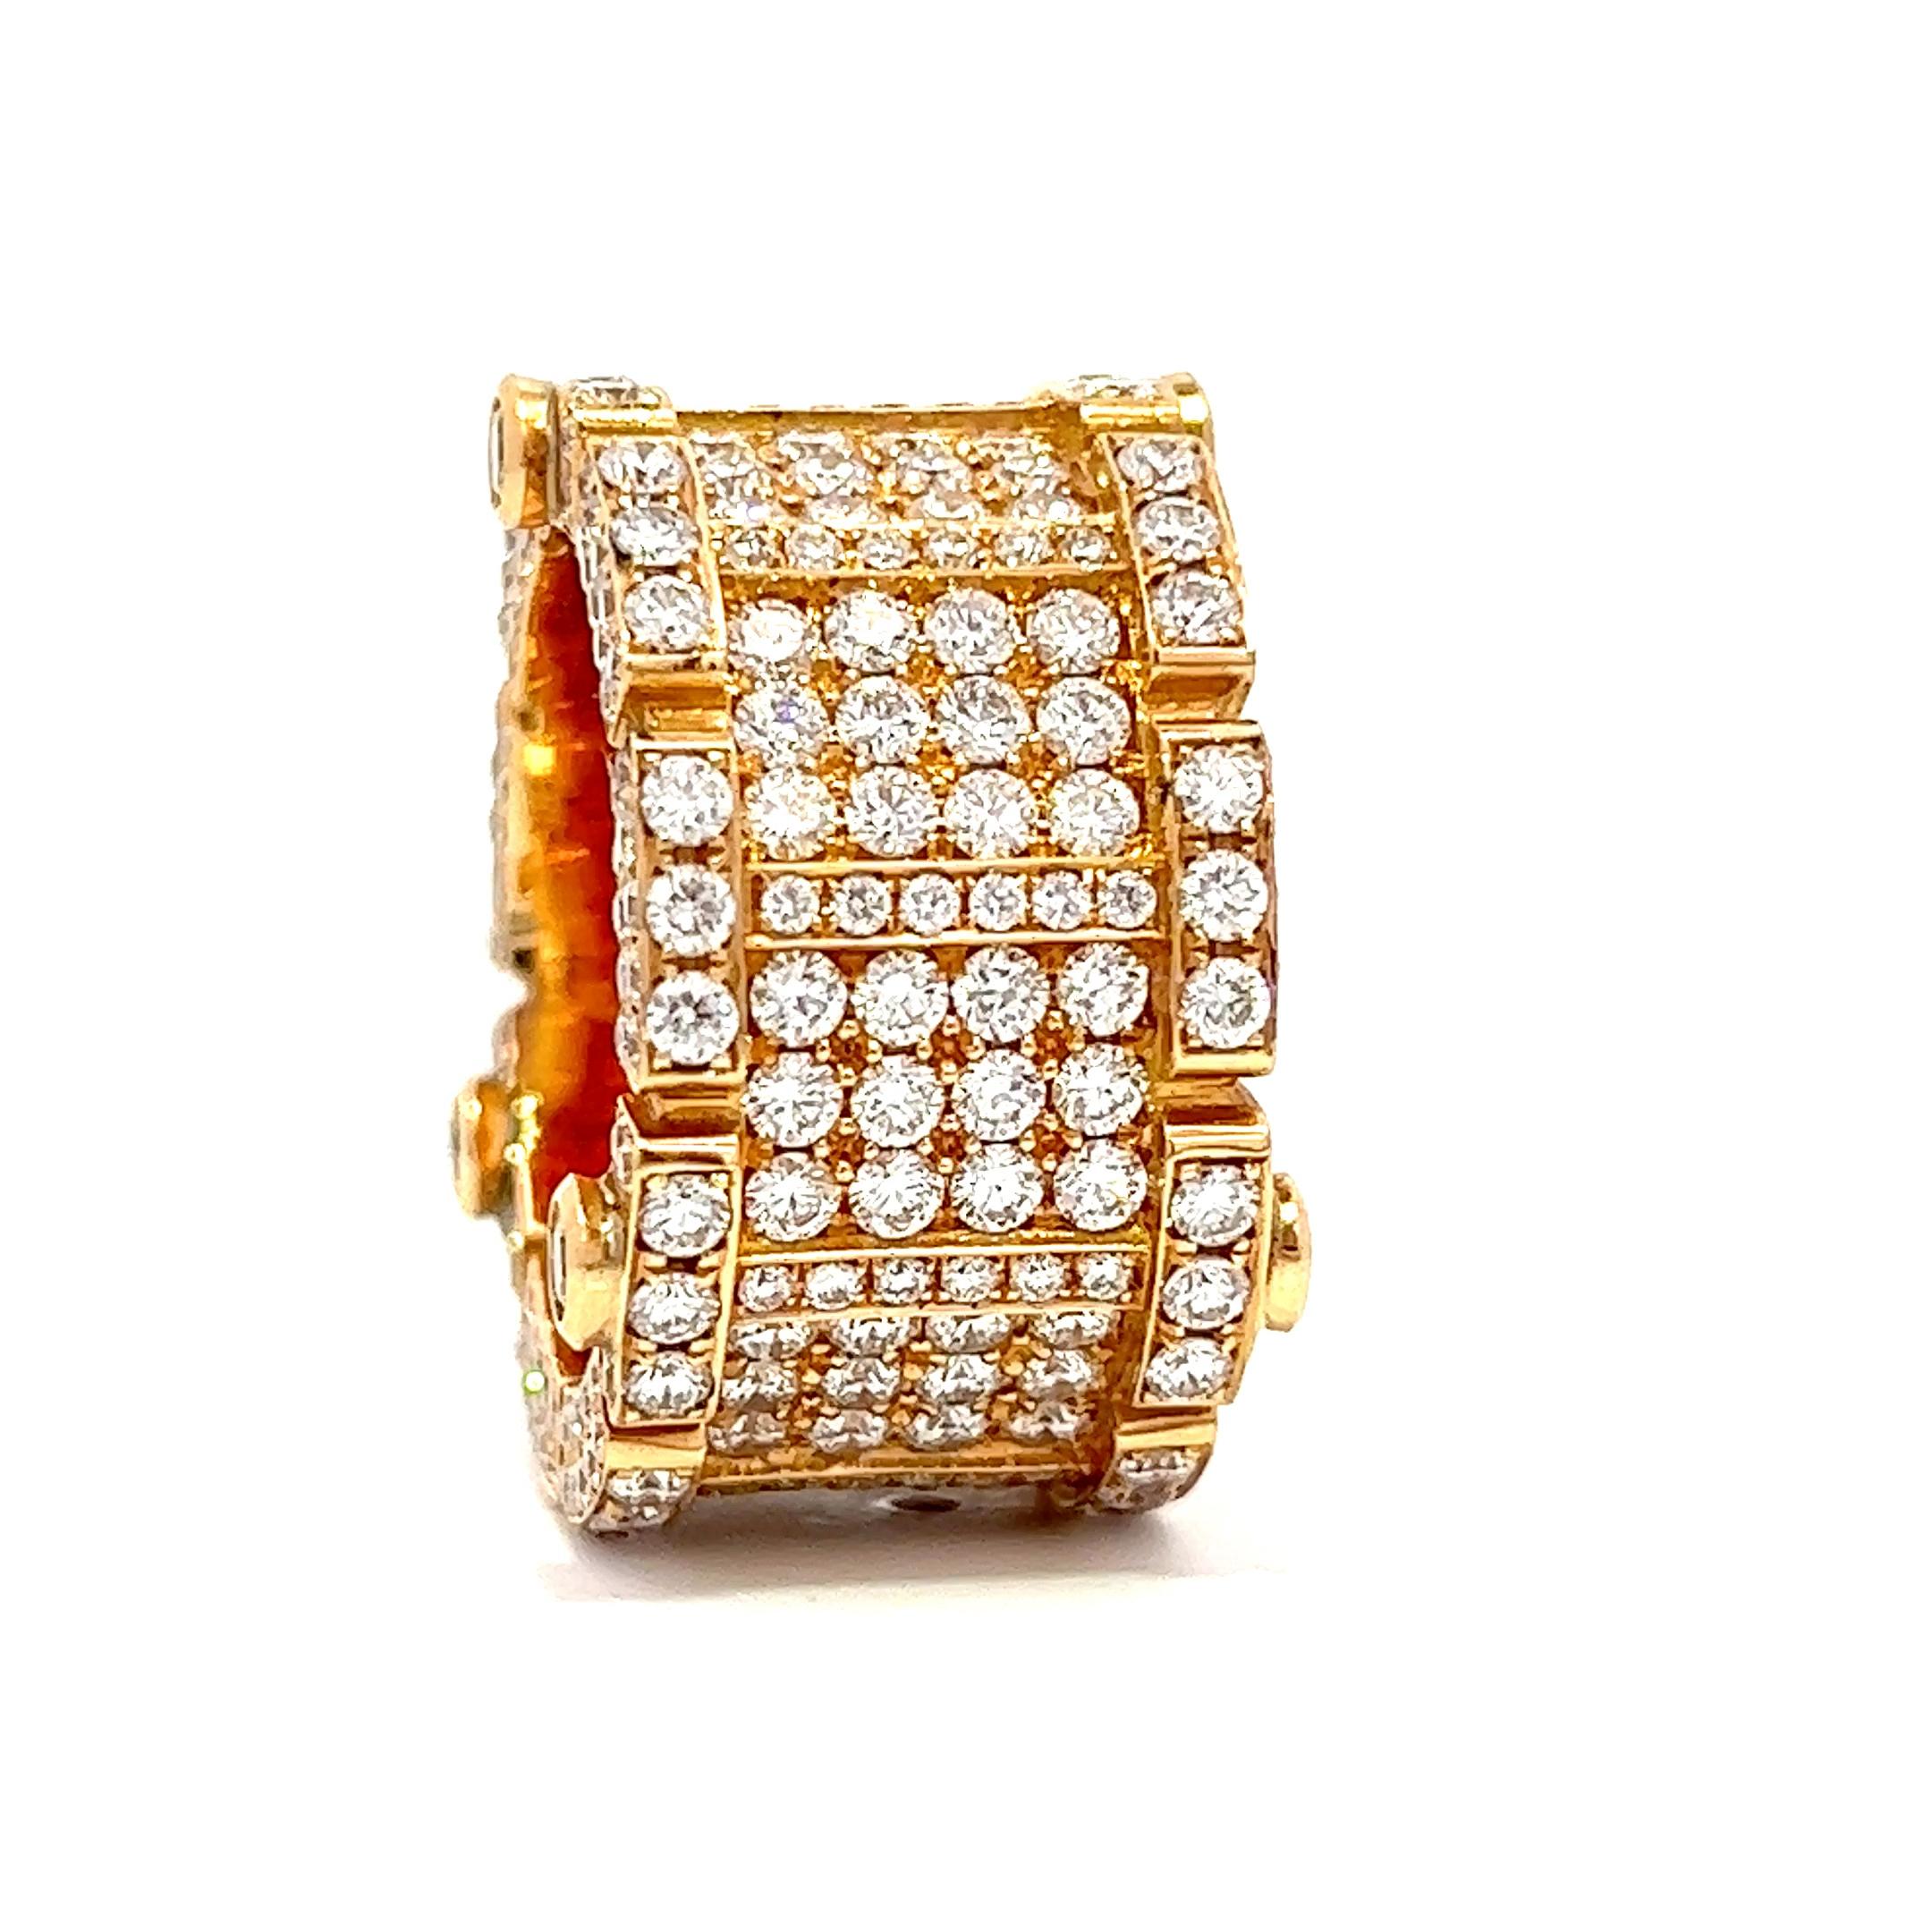 Machen Sie sich bereit, die Blicke auf sich zu ziehen mit diesem exquisiten Ring! Mit einem atemberaubenden runden Diamanten von 6,08 Karat, Farbe F und Reinheit VS, elegant gefasst in 18 Karat Roségold, ist dieses Band das ultimative Symbol für